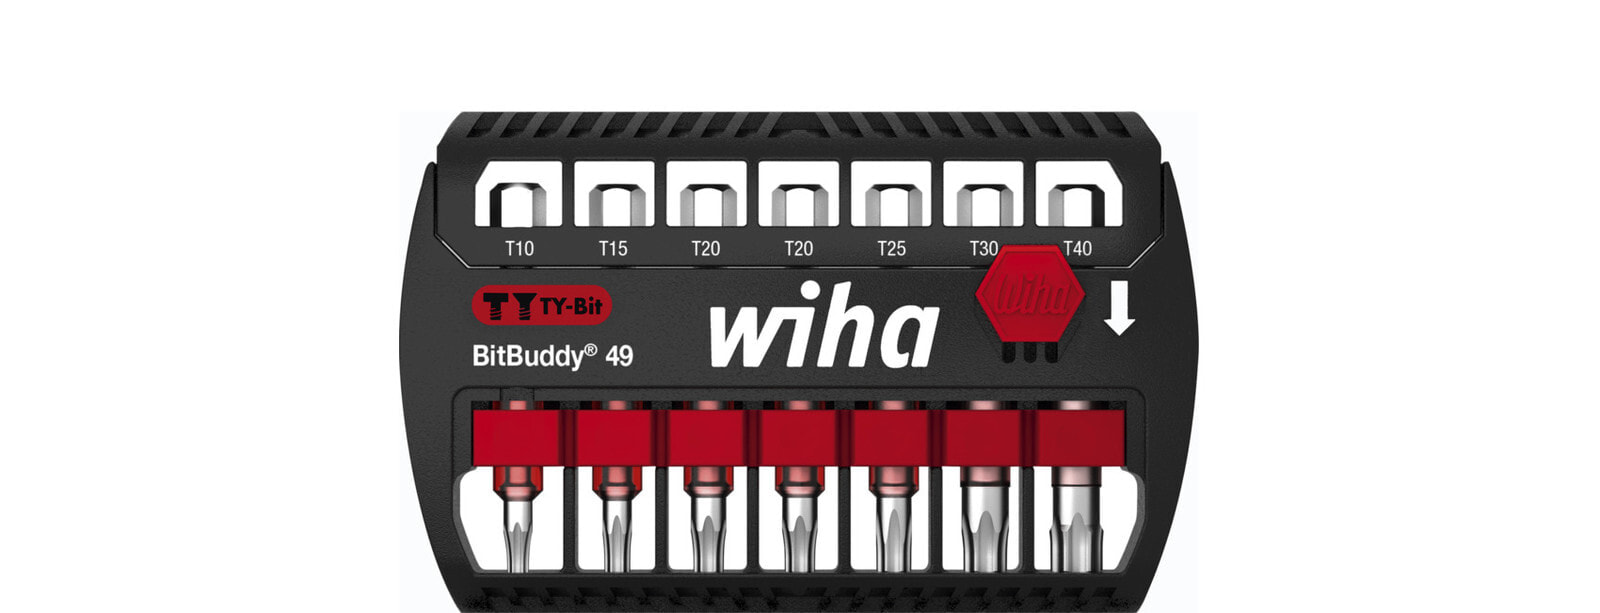 Набор бит Wiha BitBuddy TY, 49 мм, 8 шт., Torx, T10, T15, T20, T25, T30, T40, 126 г